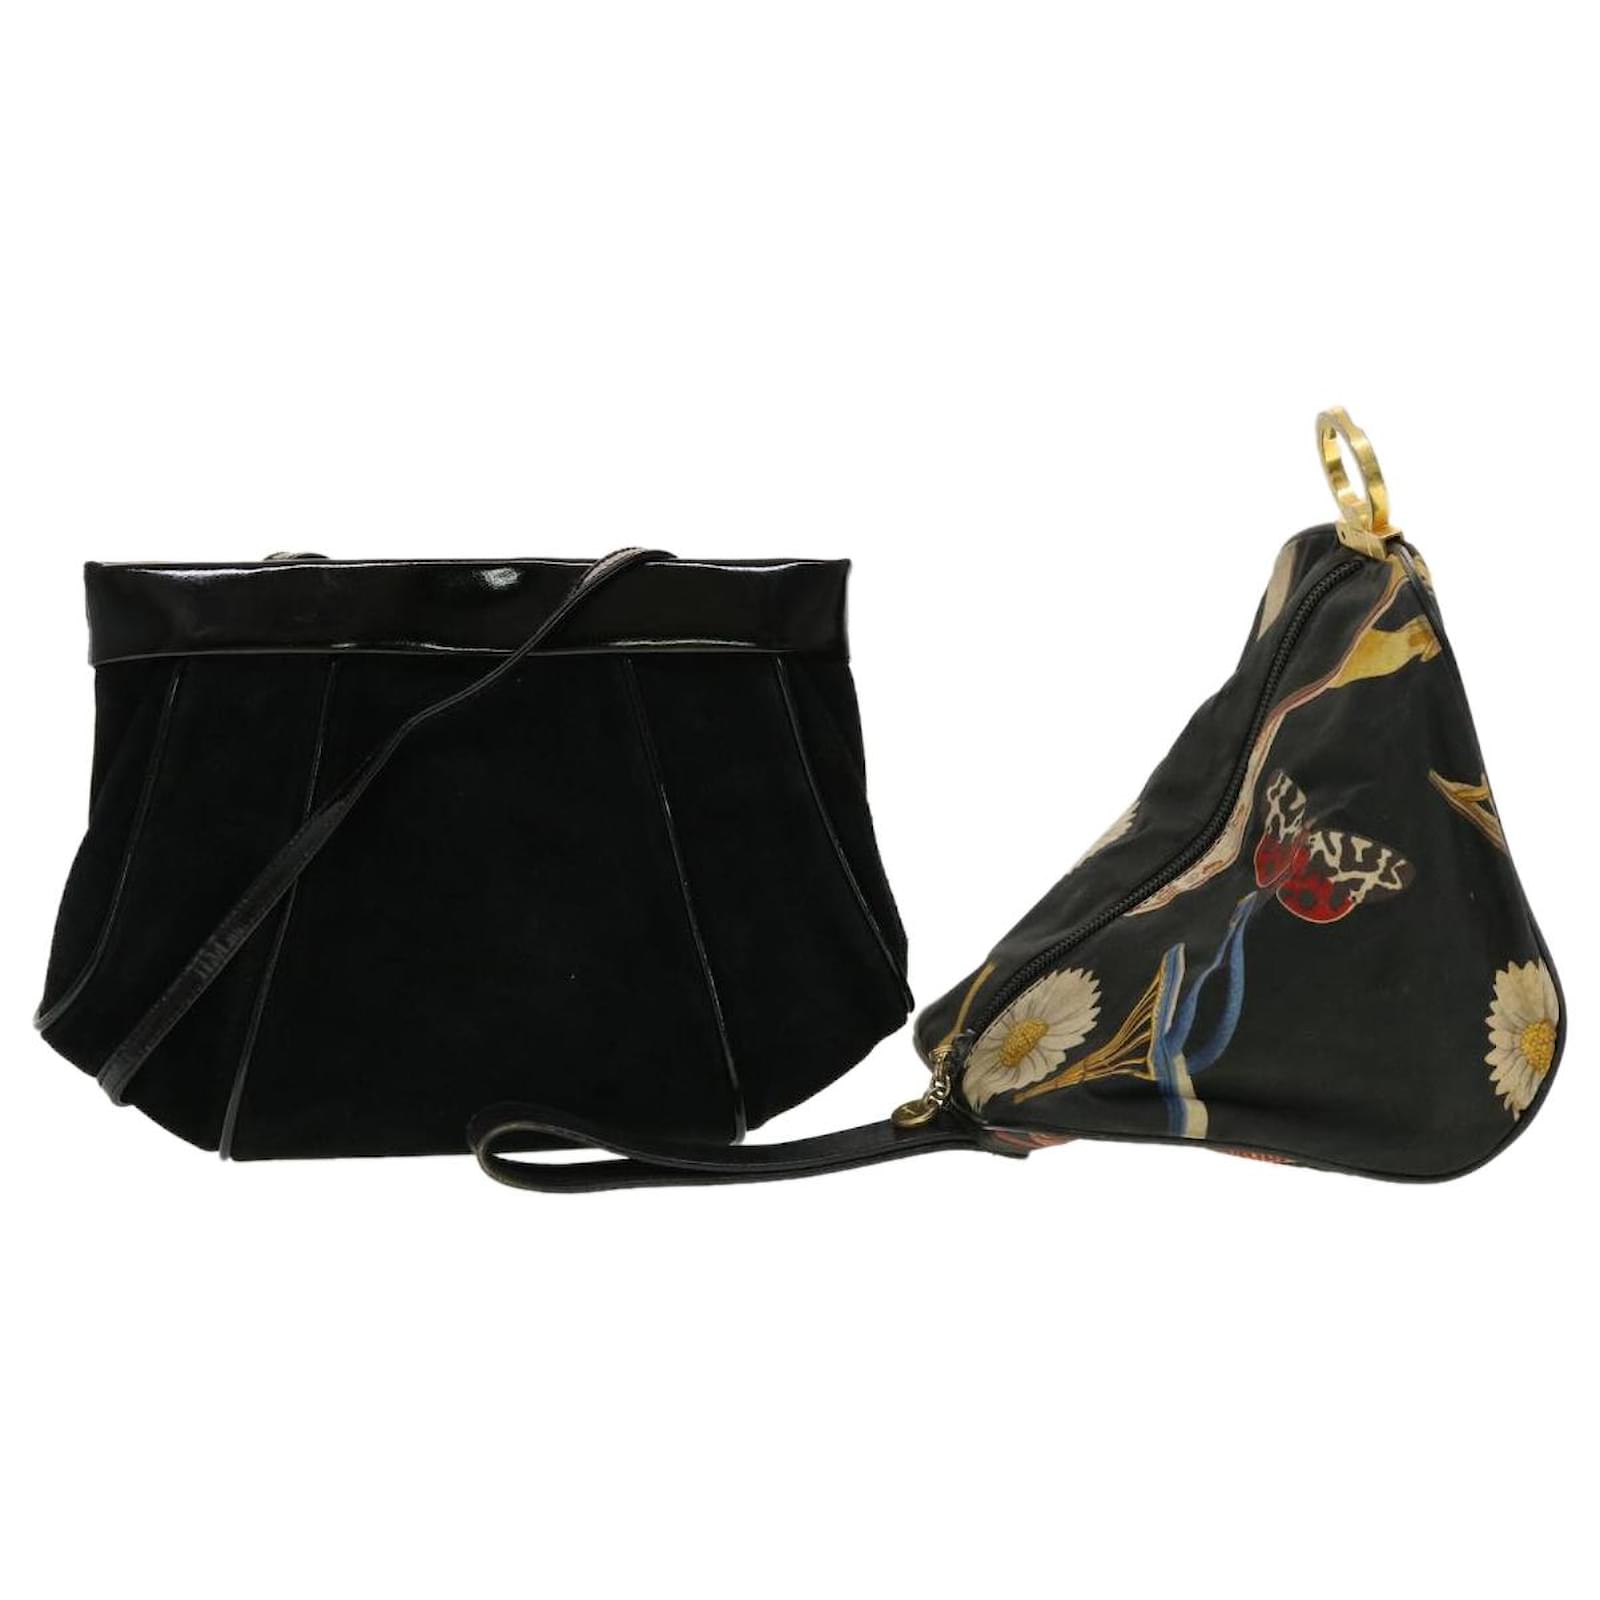 Salvatore Ferragamo Hand Bag Patent leather Black Auth bs8158 ref